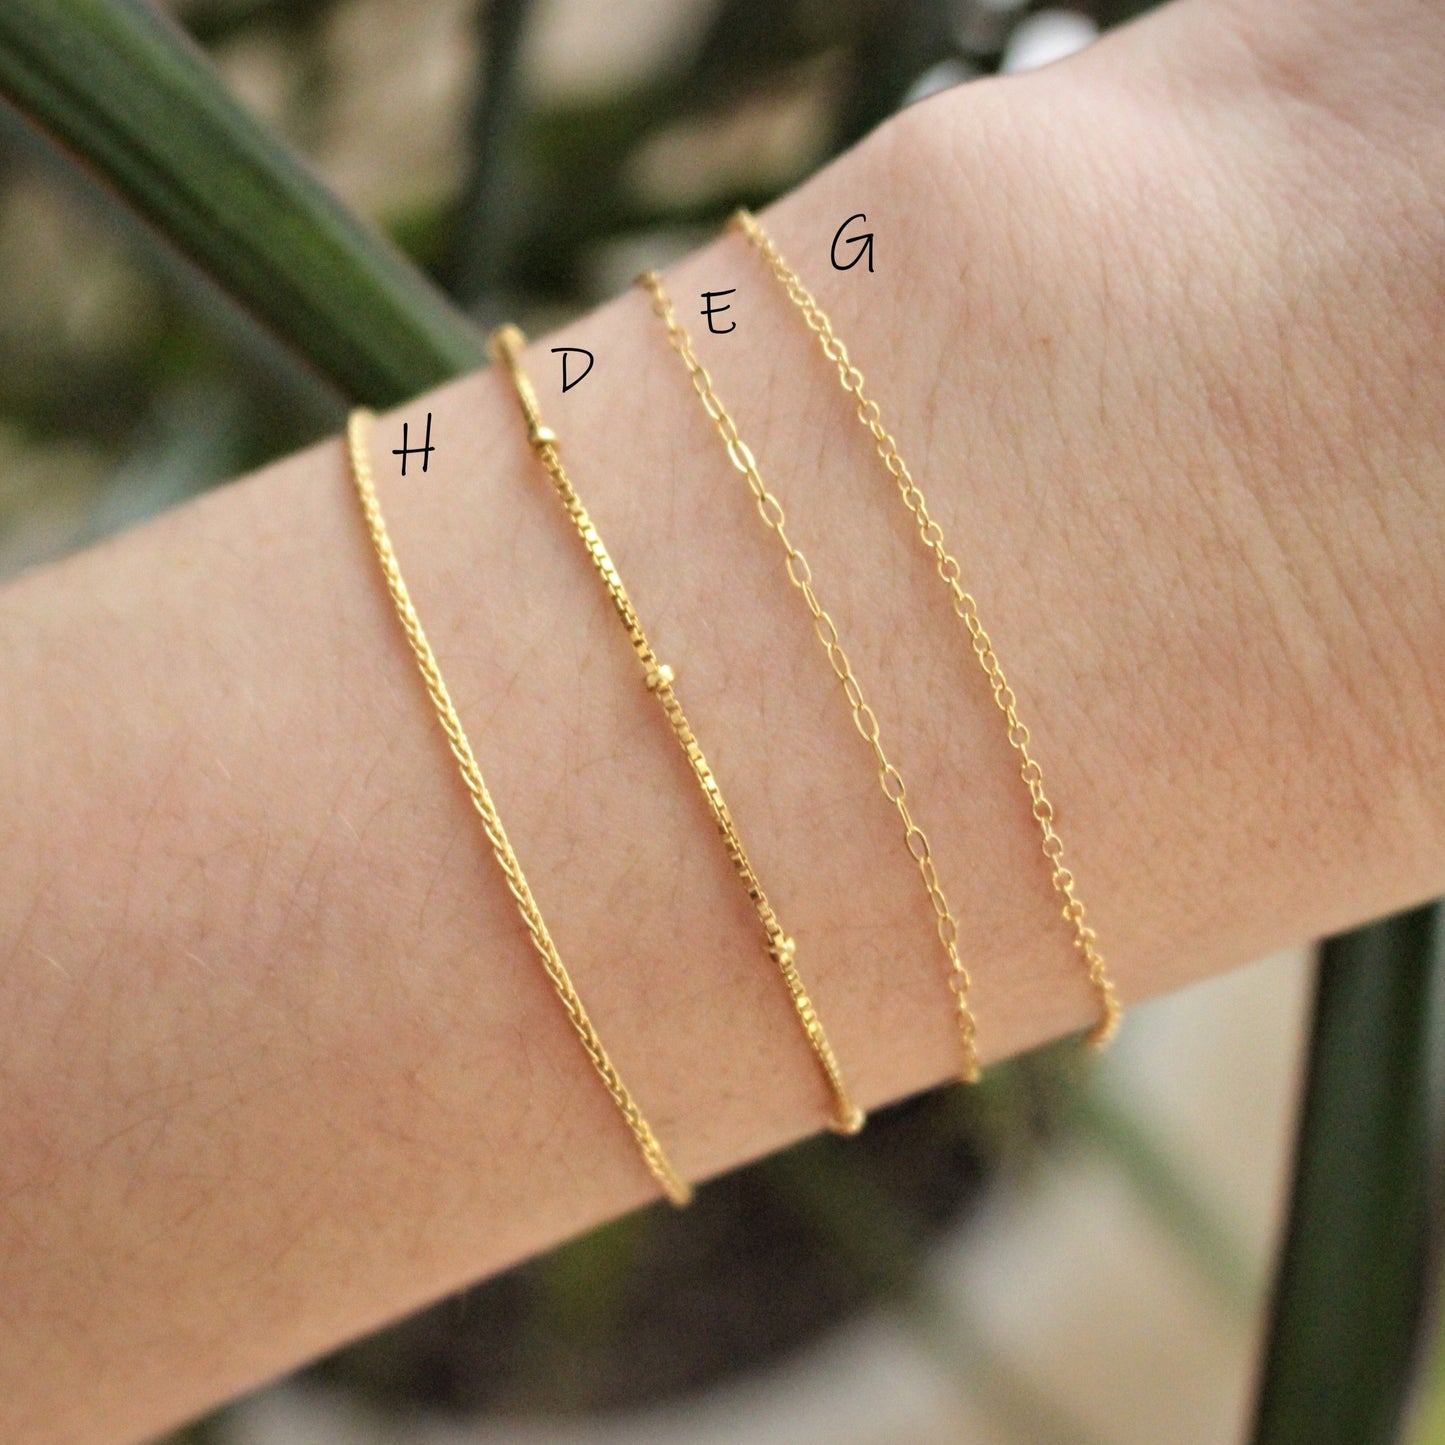 14k gold fill bracelet · Mix styles · Stack bracelet for women · Best seller on Etsy